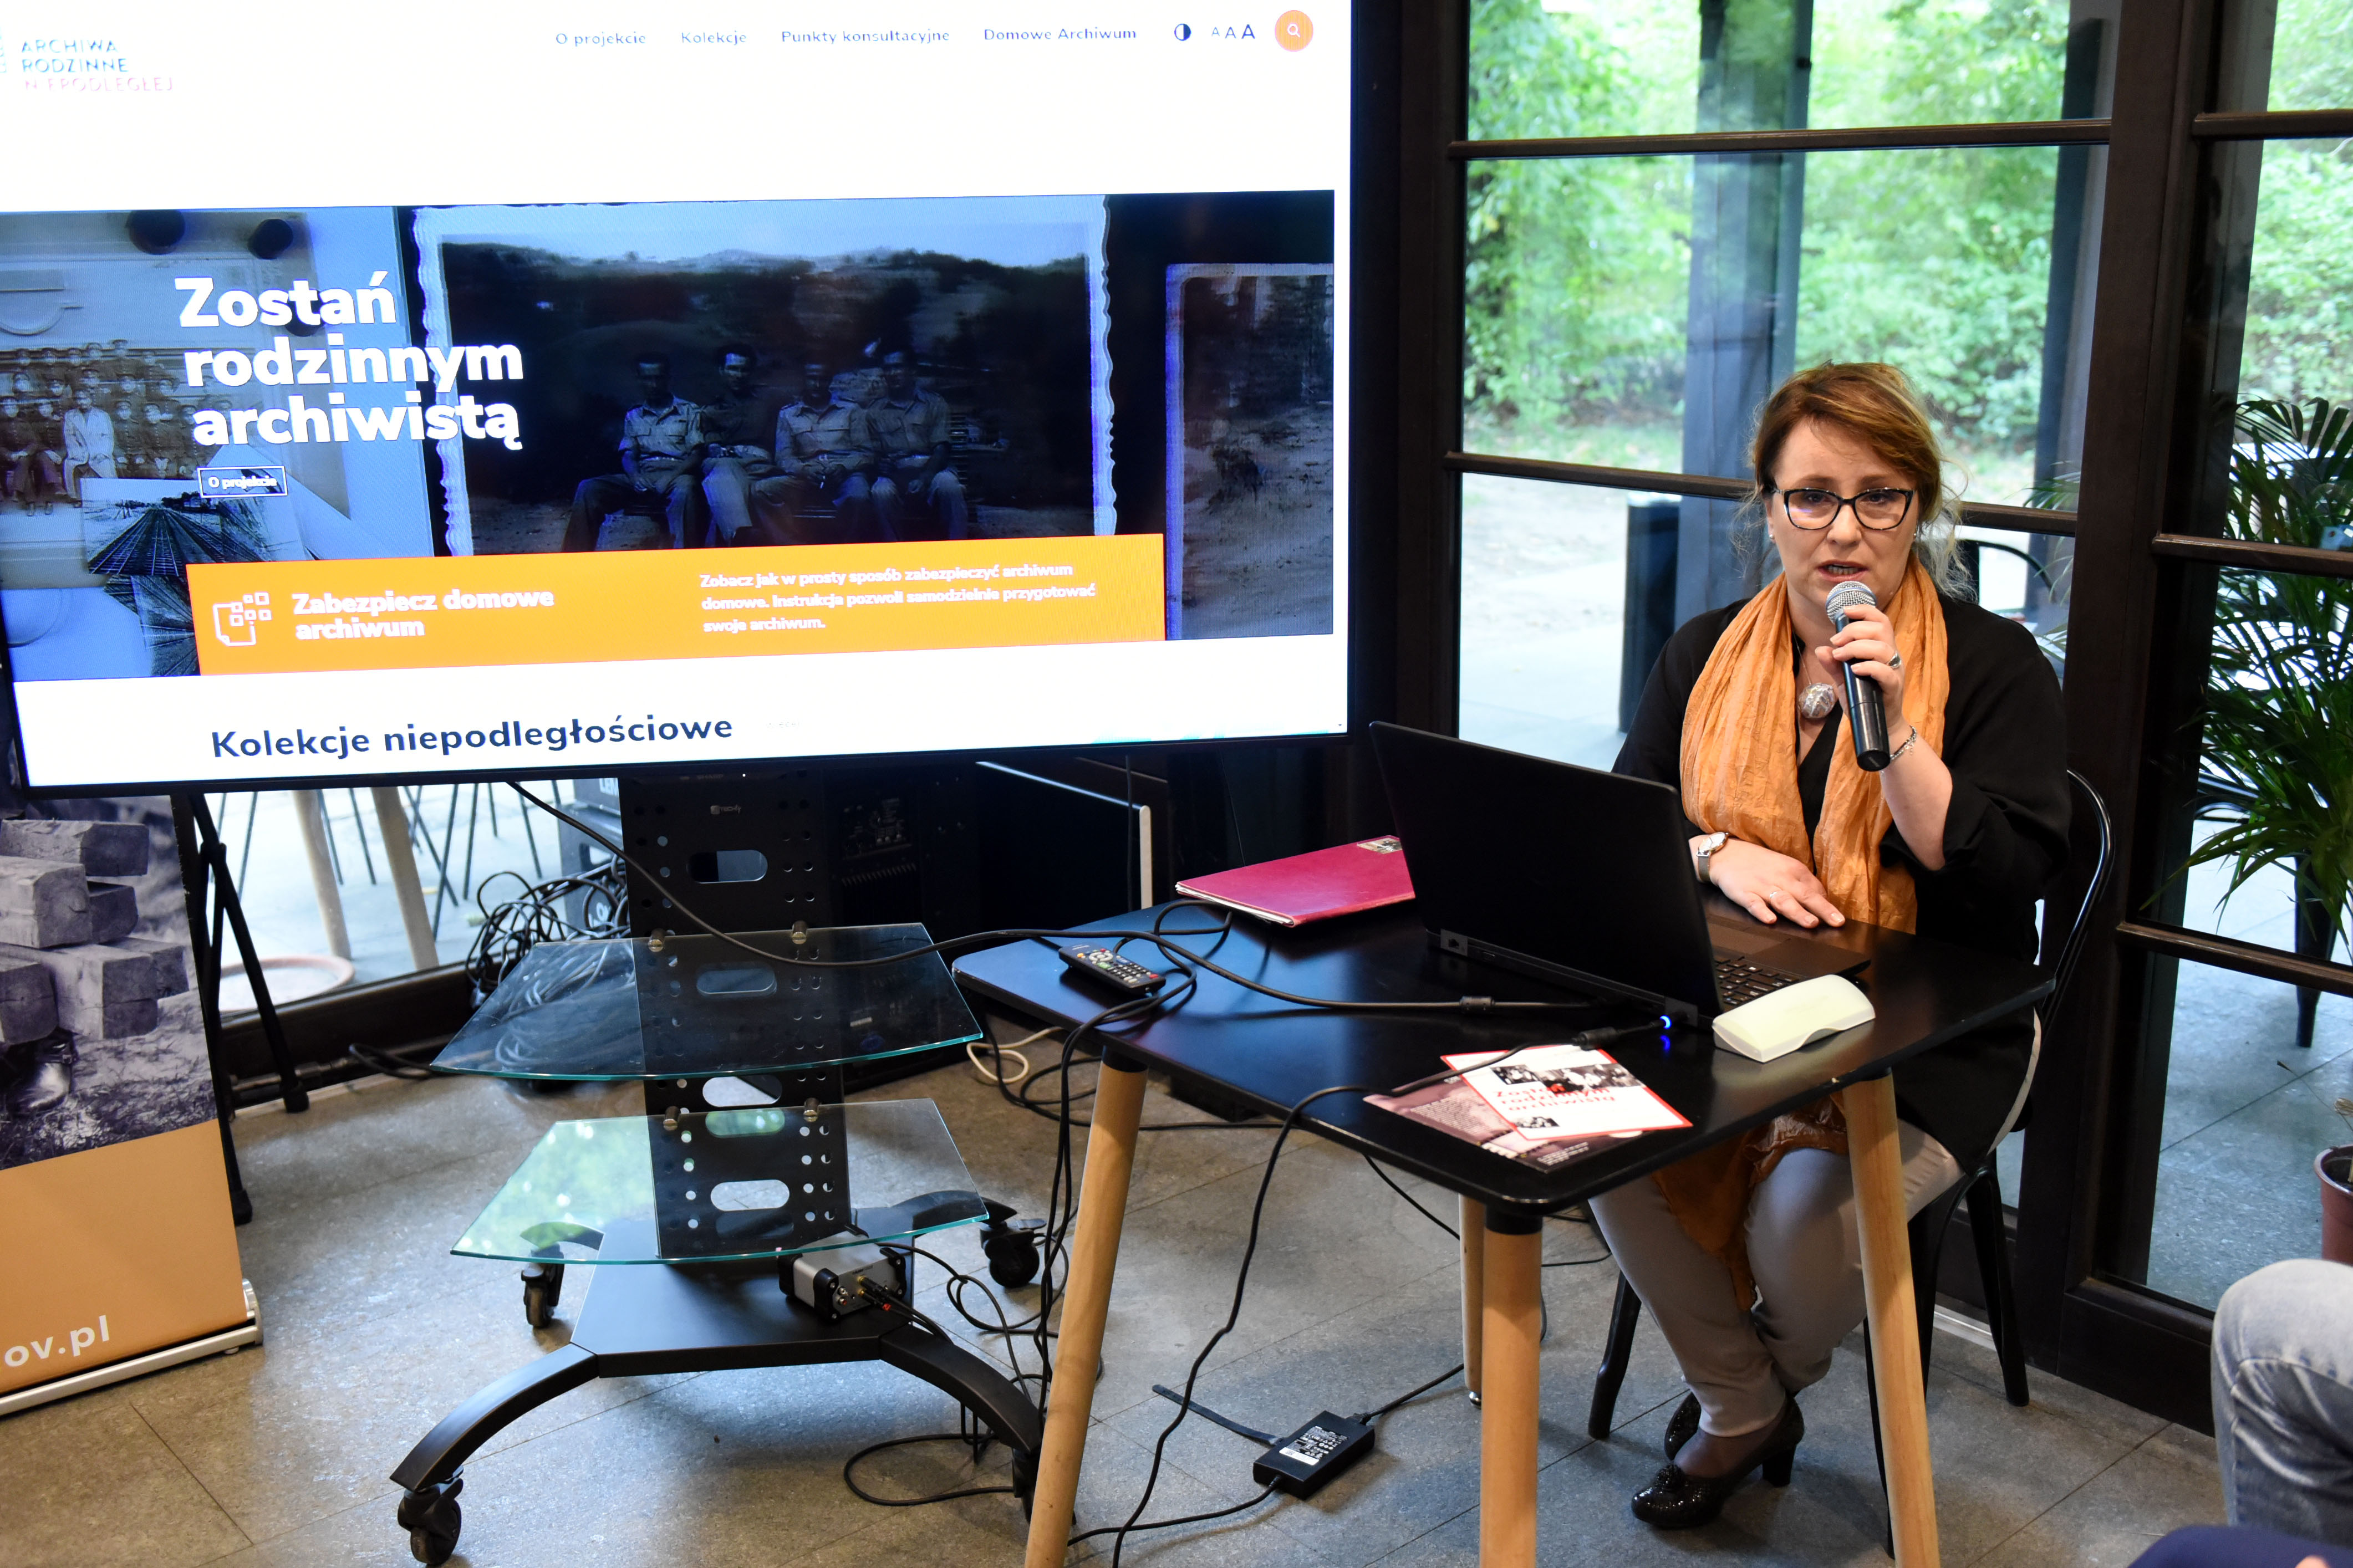 Stronę internetową projektu wyświetlaną na dużym ekranie prezentuje Zastępca Naczelnego Dyrektora Archiwów Państwowych Joanna Chojecka.